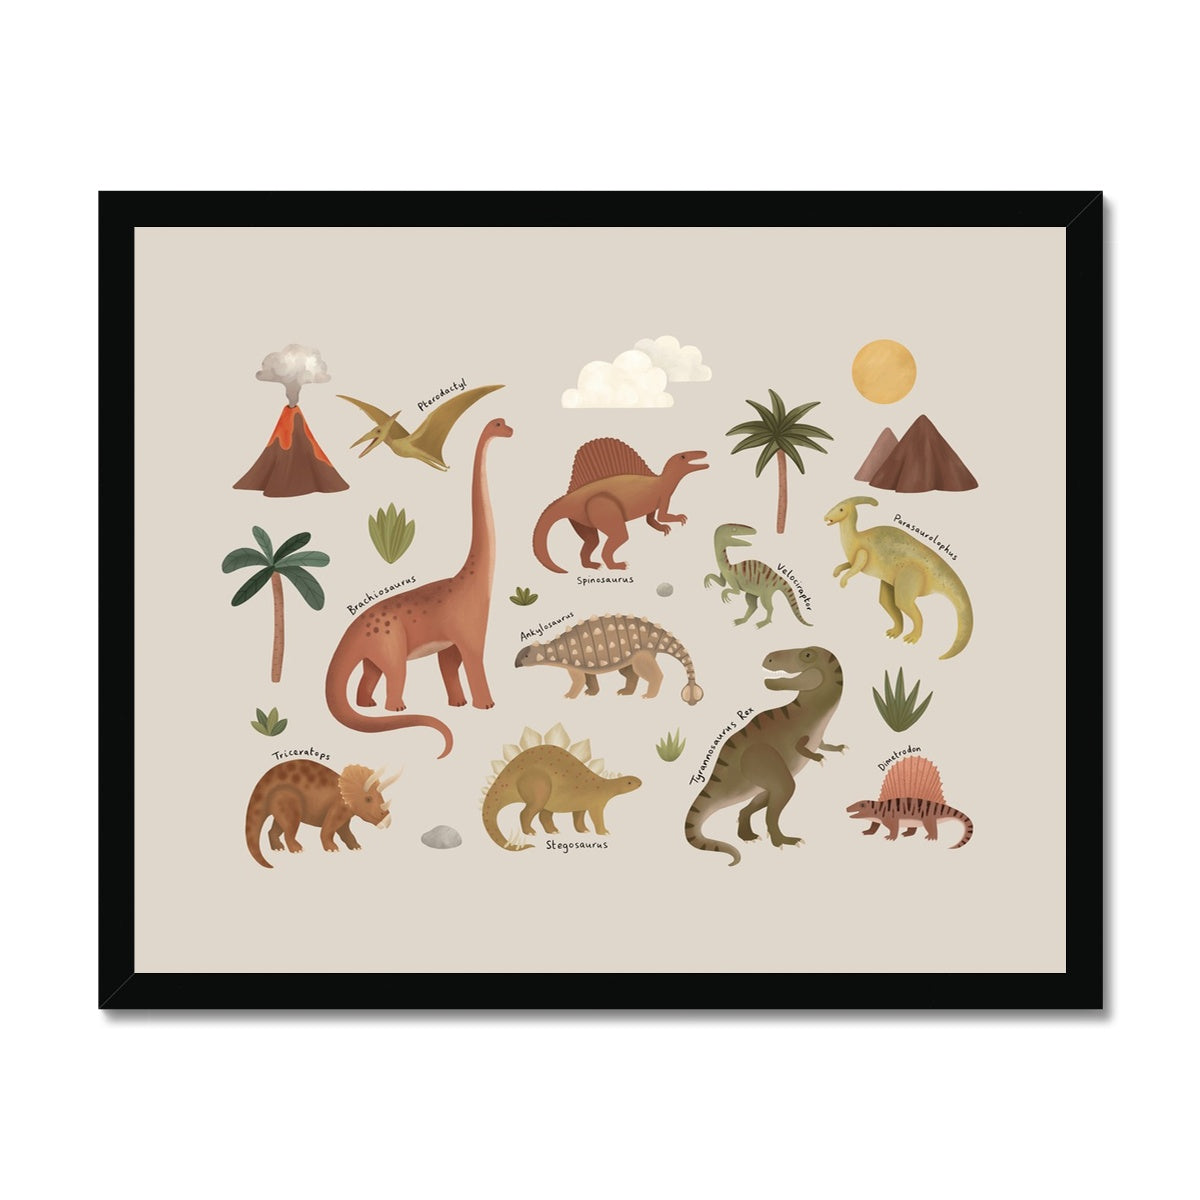 Dinosaurs in stone / Framed Print